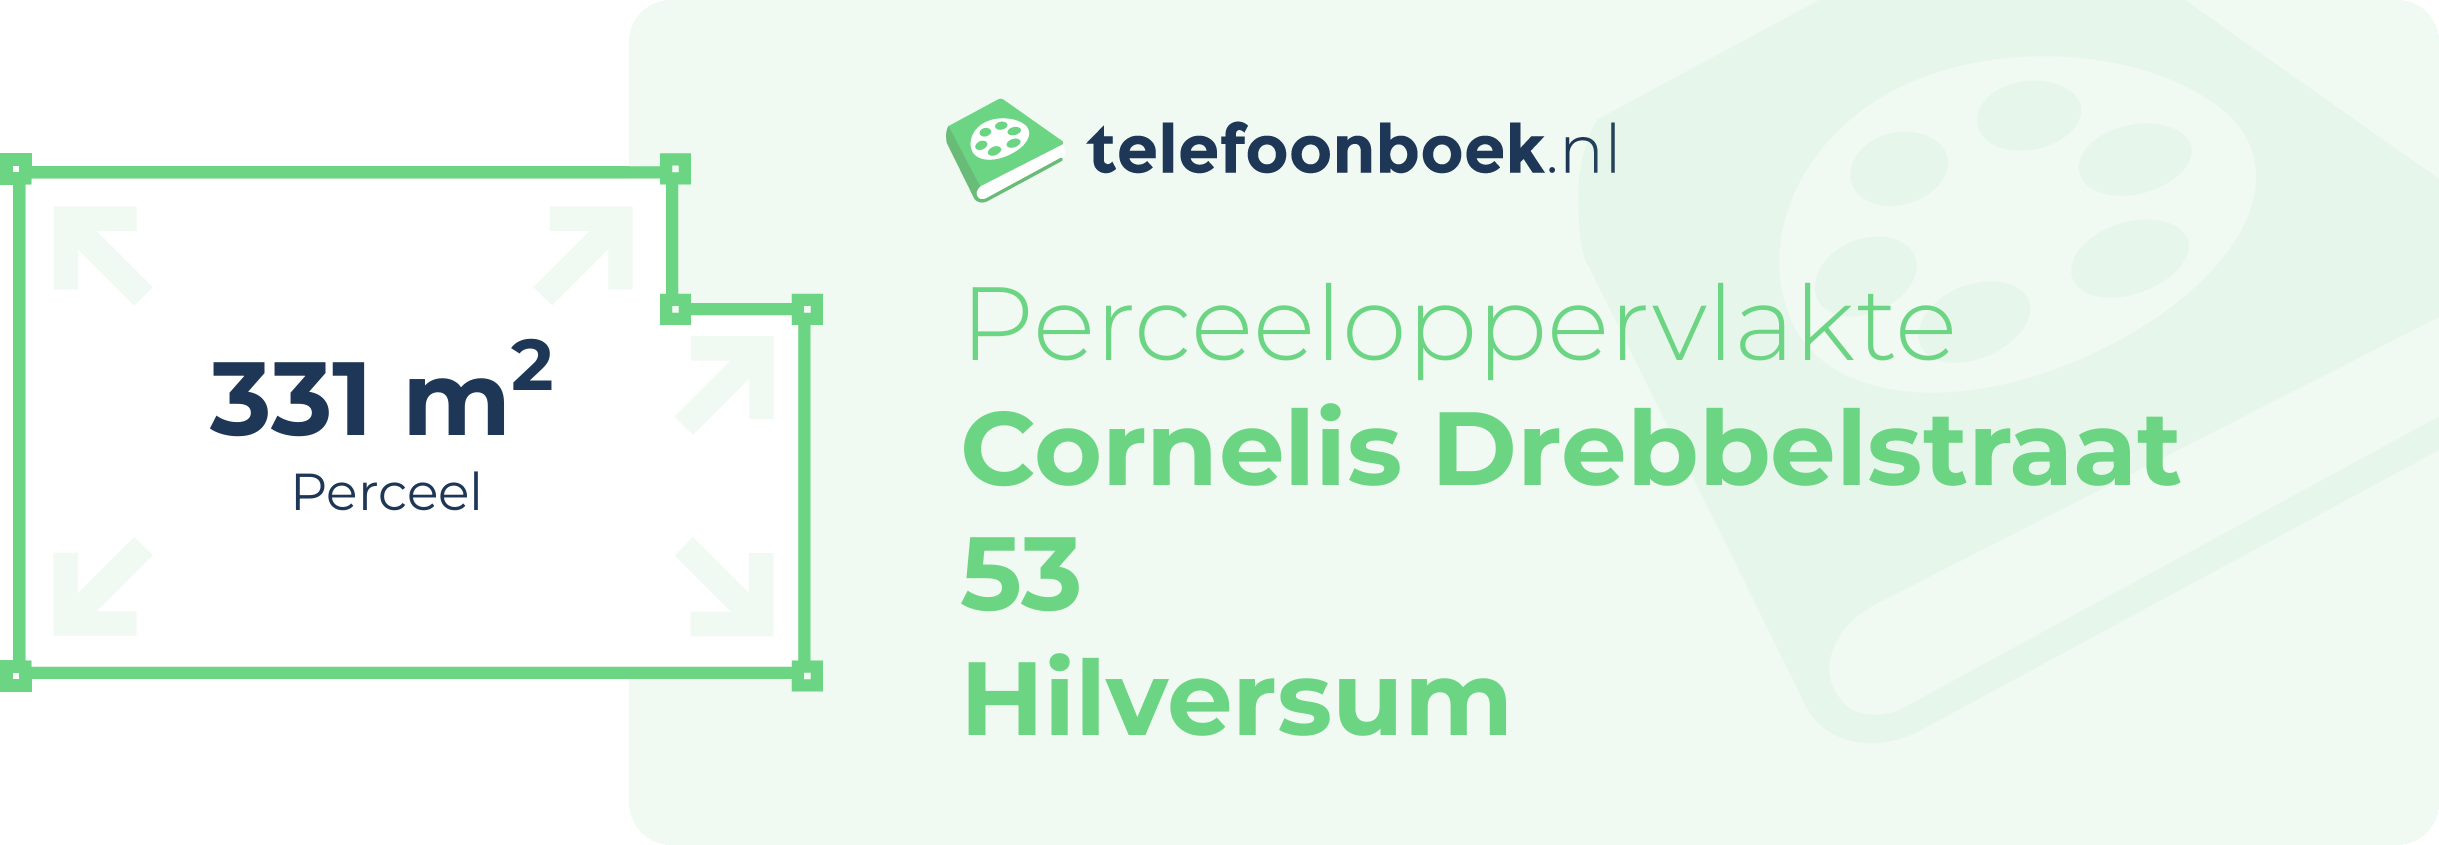 Perceeloppervlakte Cornelis Drebbelstraat 53 Hilversum